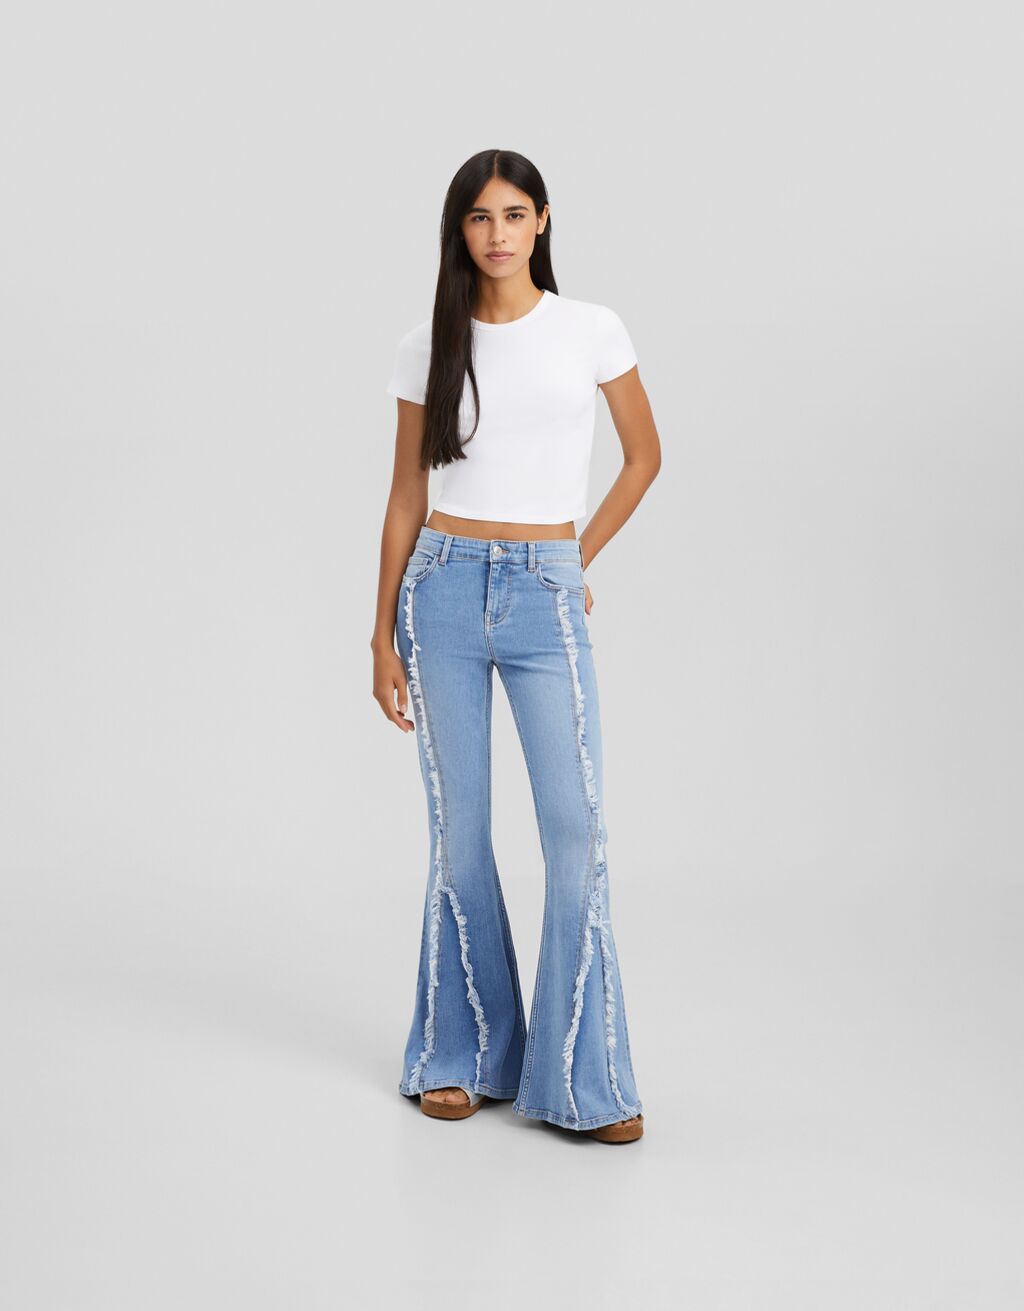 70s flare jeans - Women